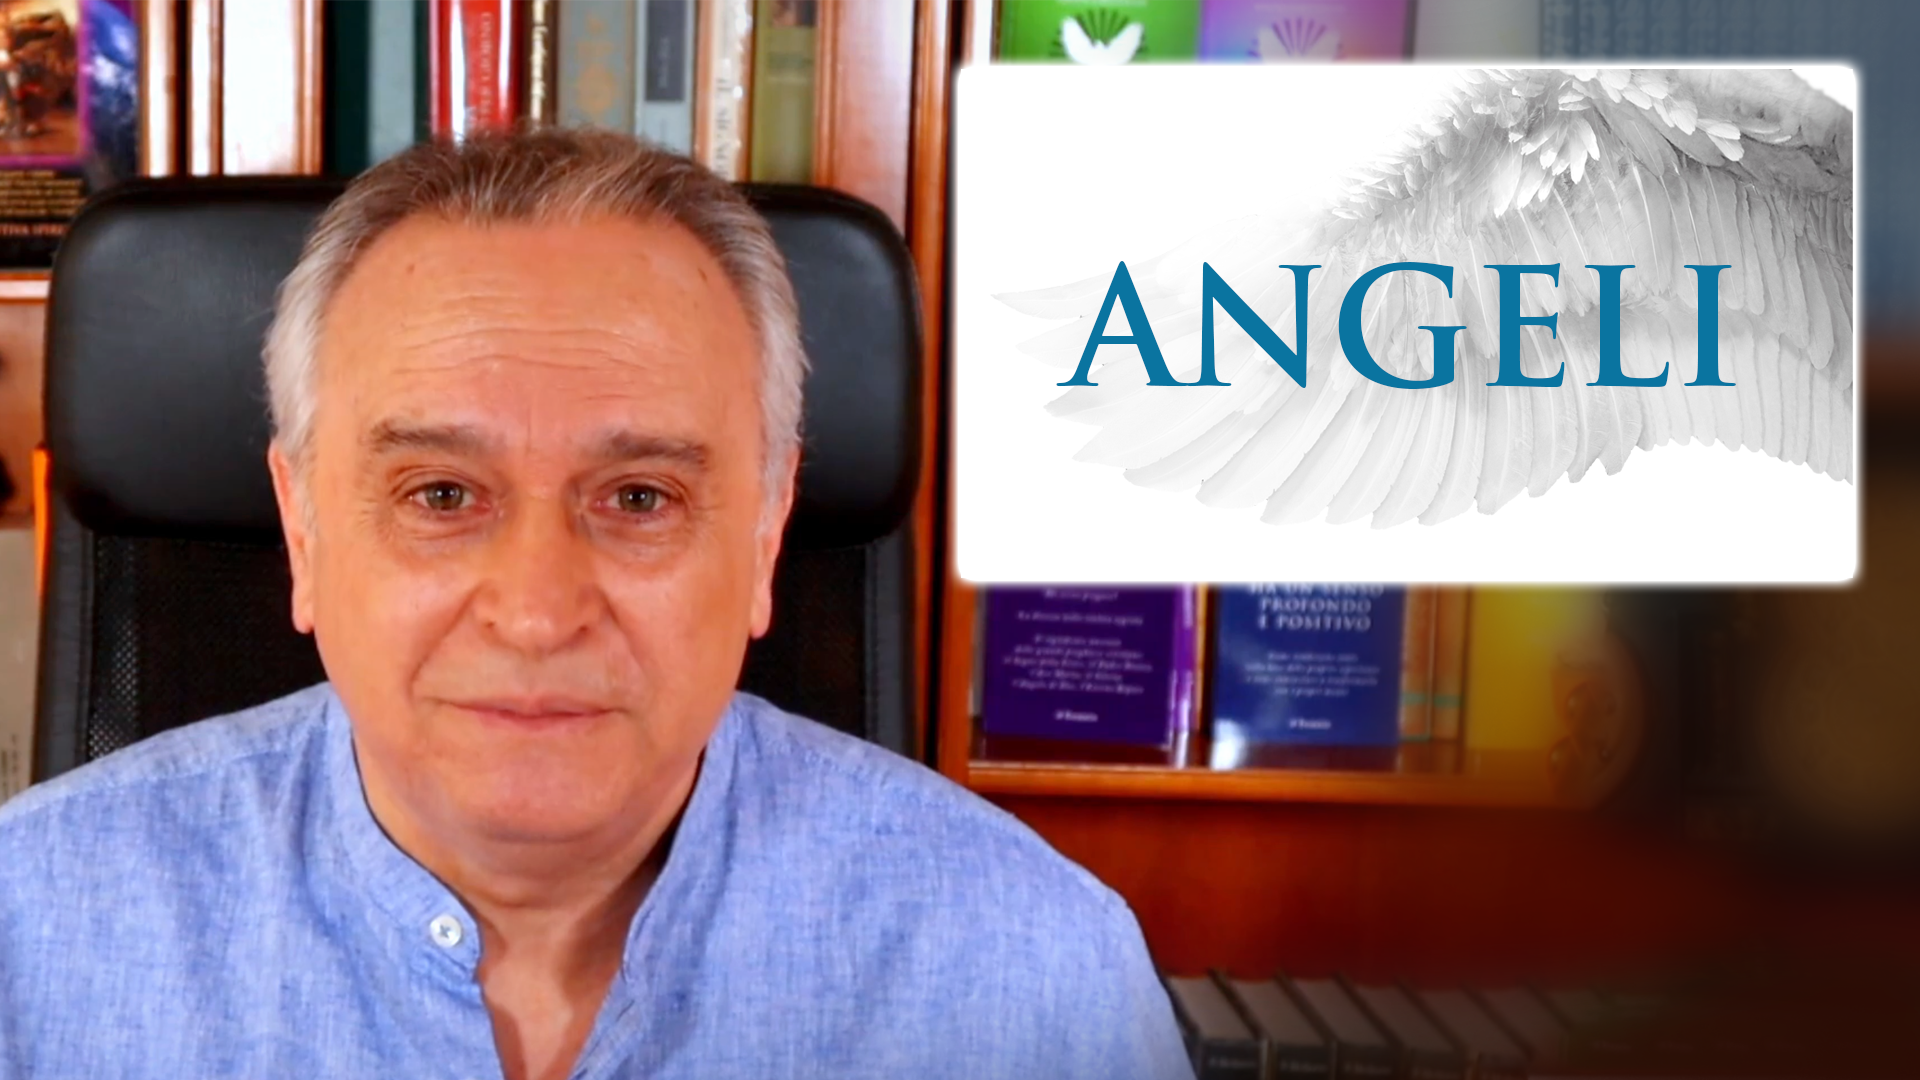 Scopri di più sull'articolo “ANGELI”: un importante seminario online con Fausto Carotenuto